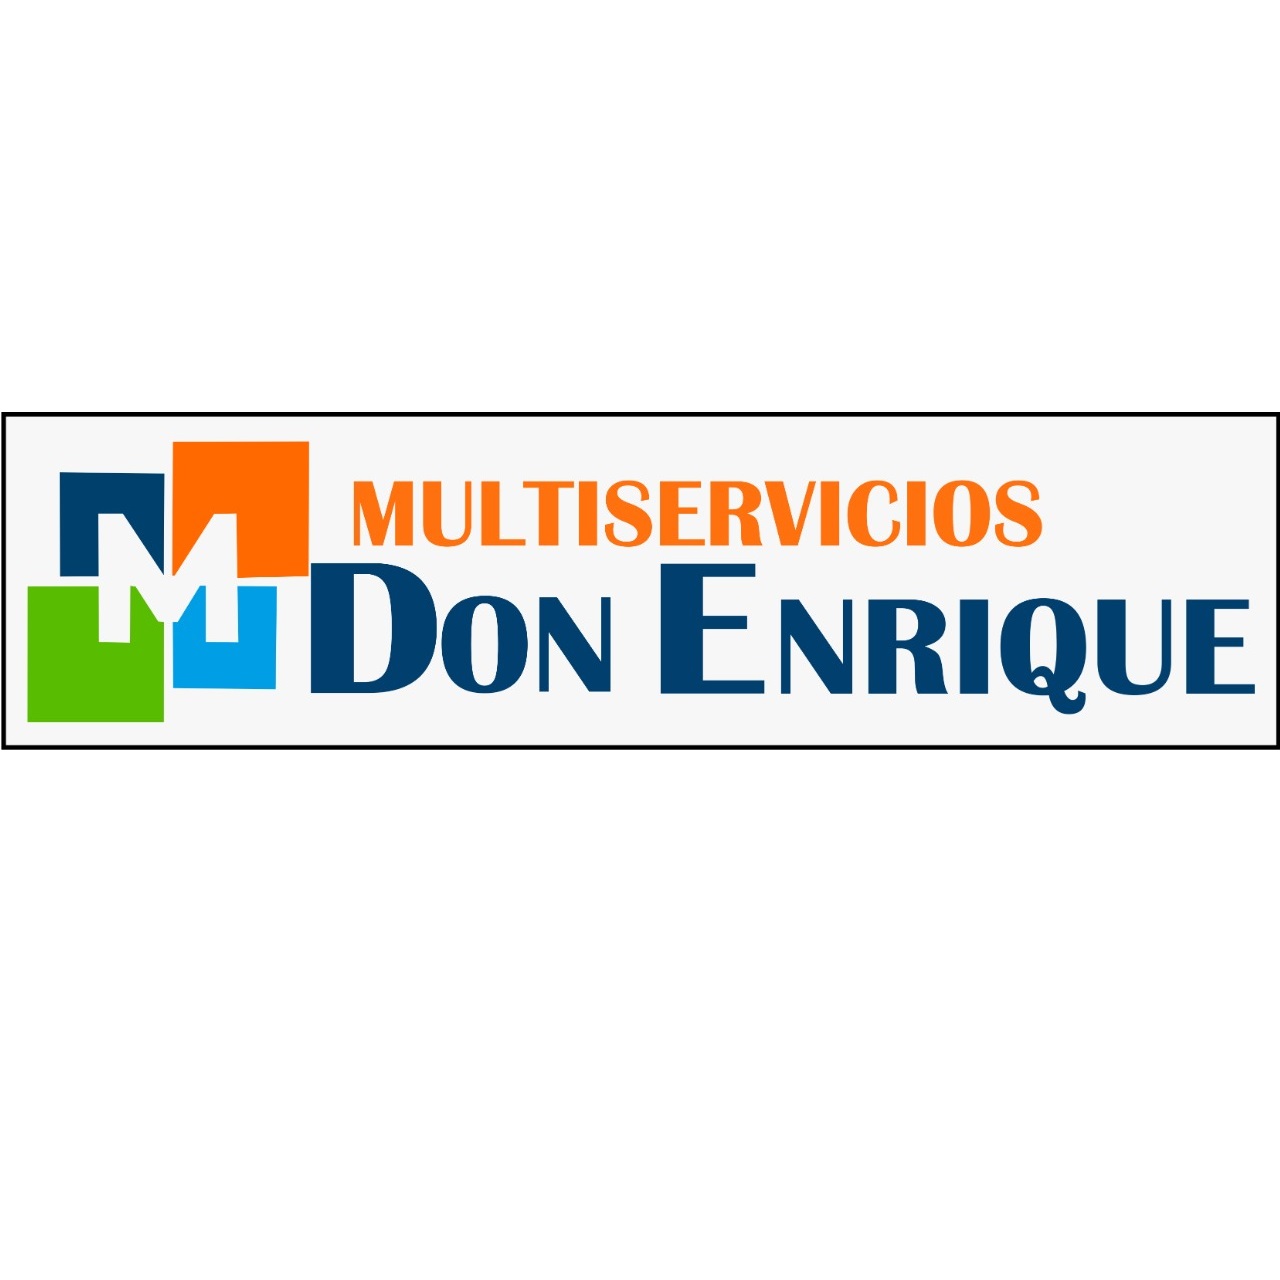 Multiservicios Don Enrique